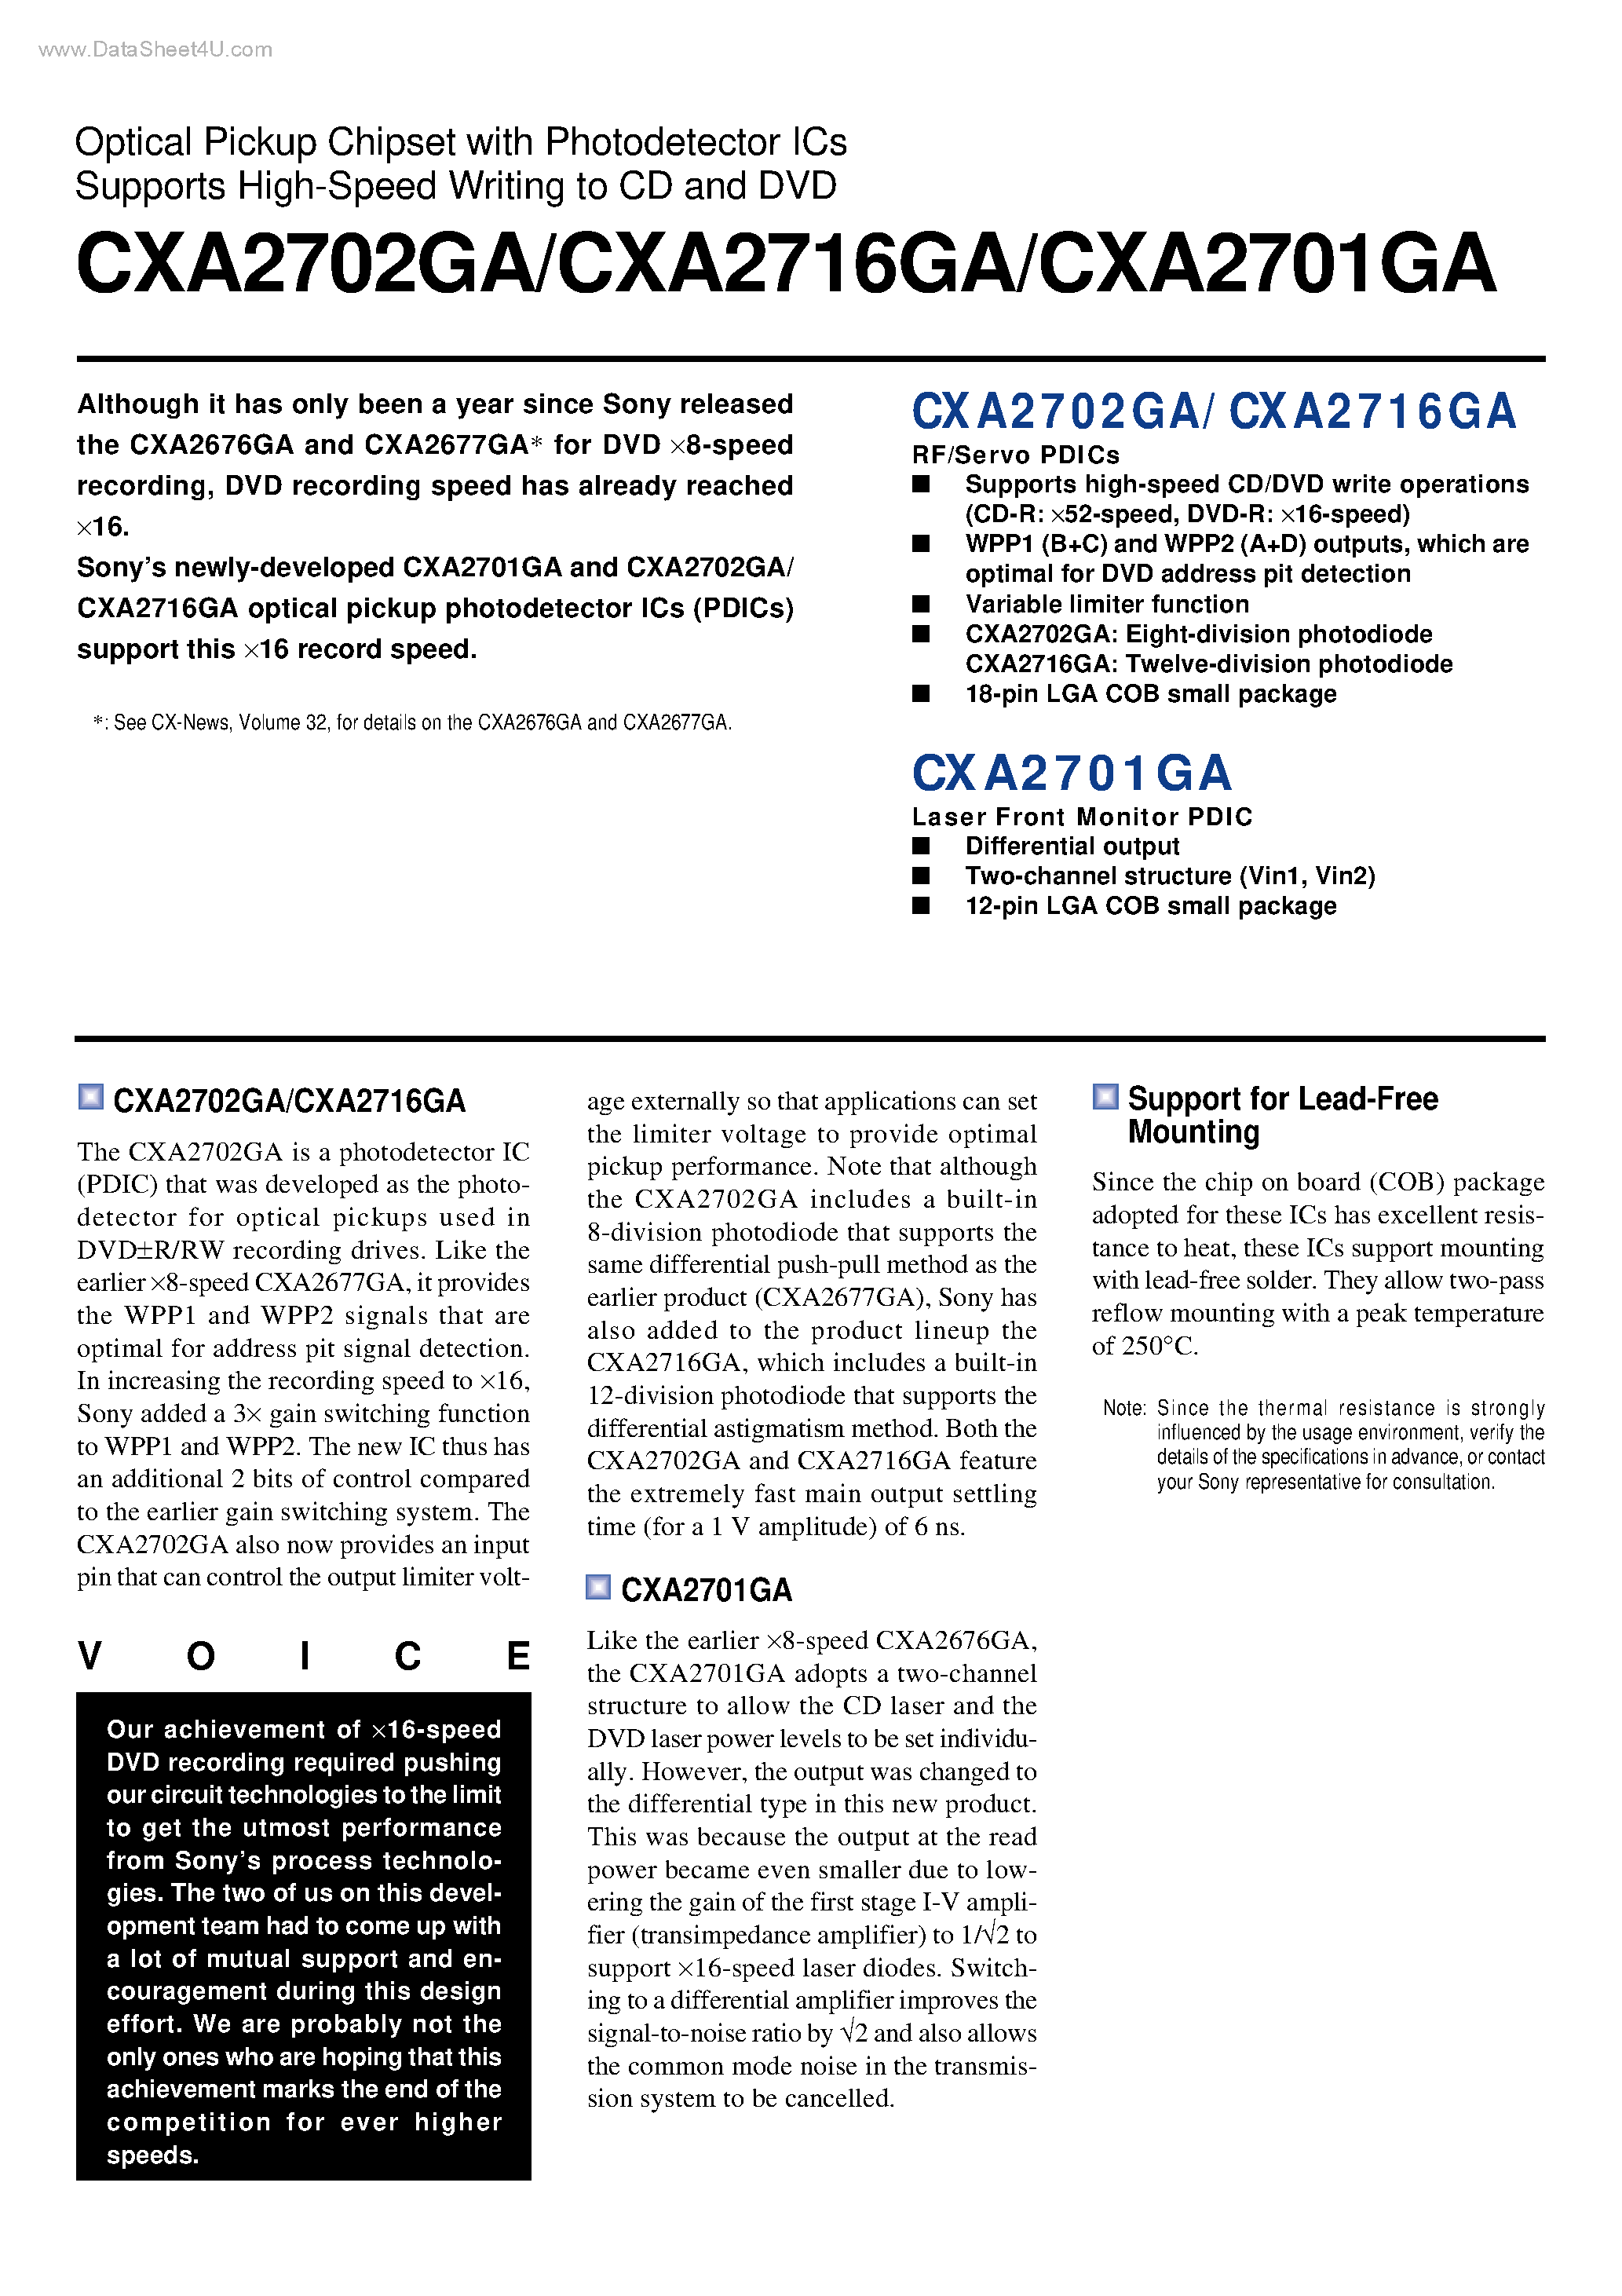 Datasheet CXA2701GA - (CXA27xxGA) Optical Pickup Chipset page 1